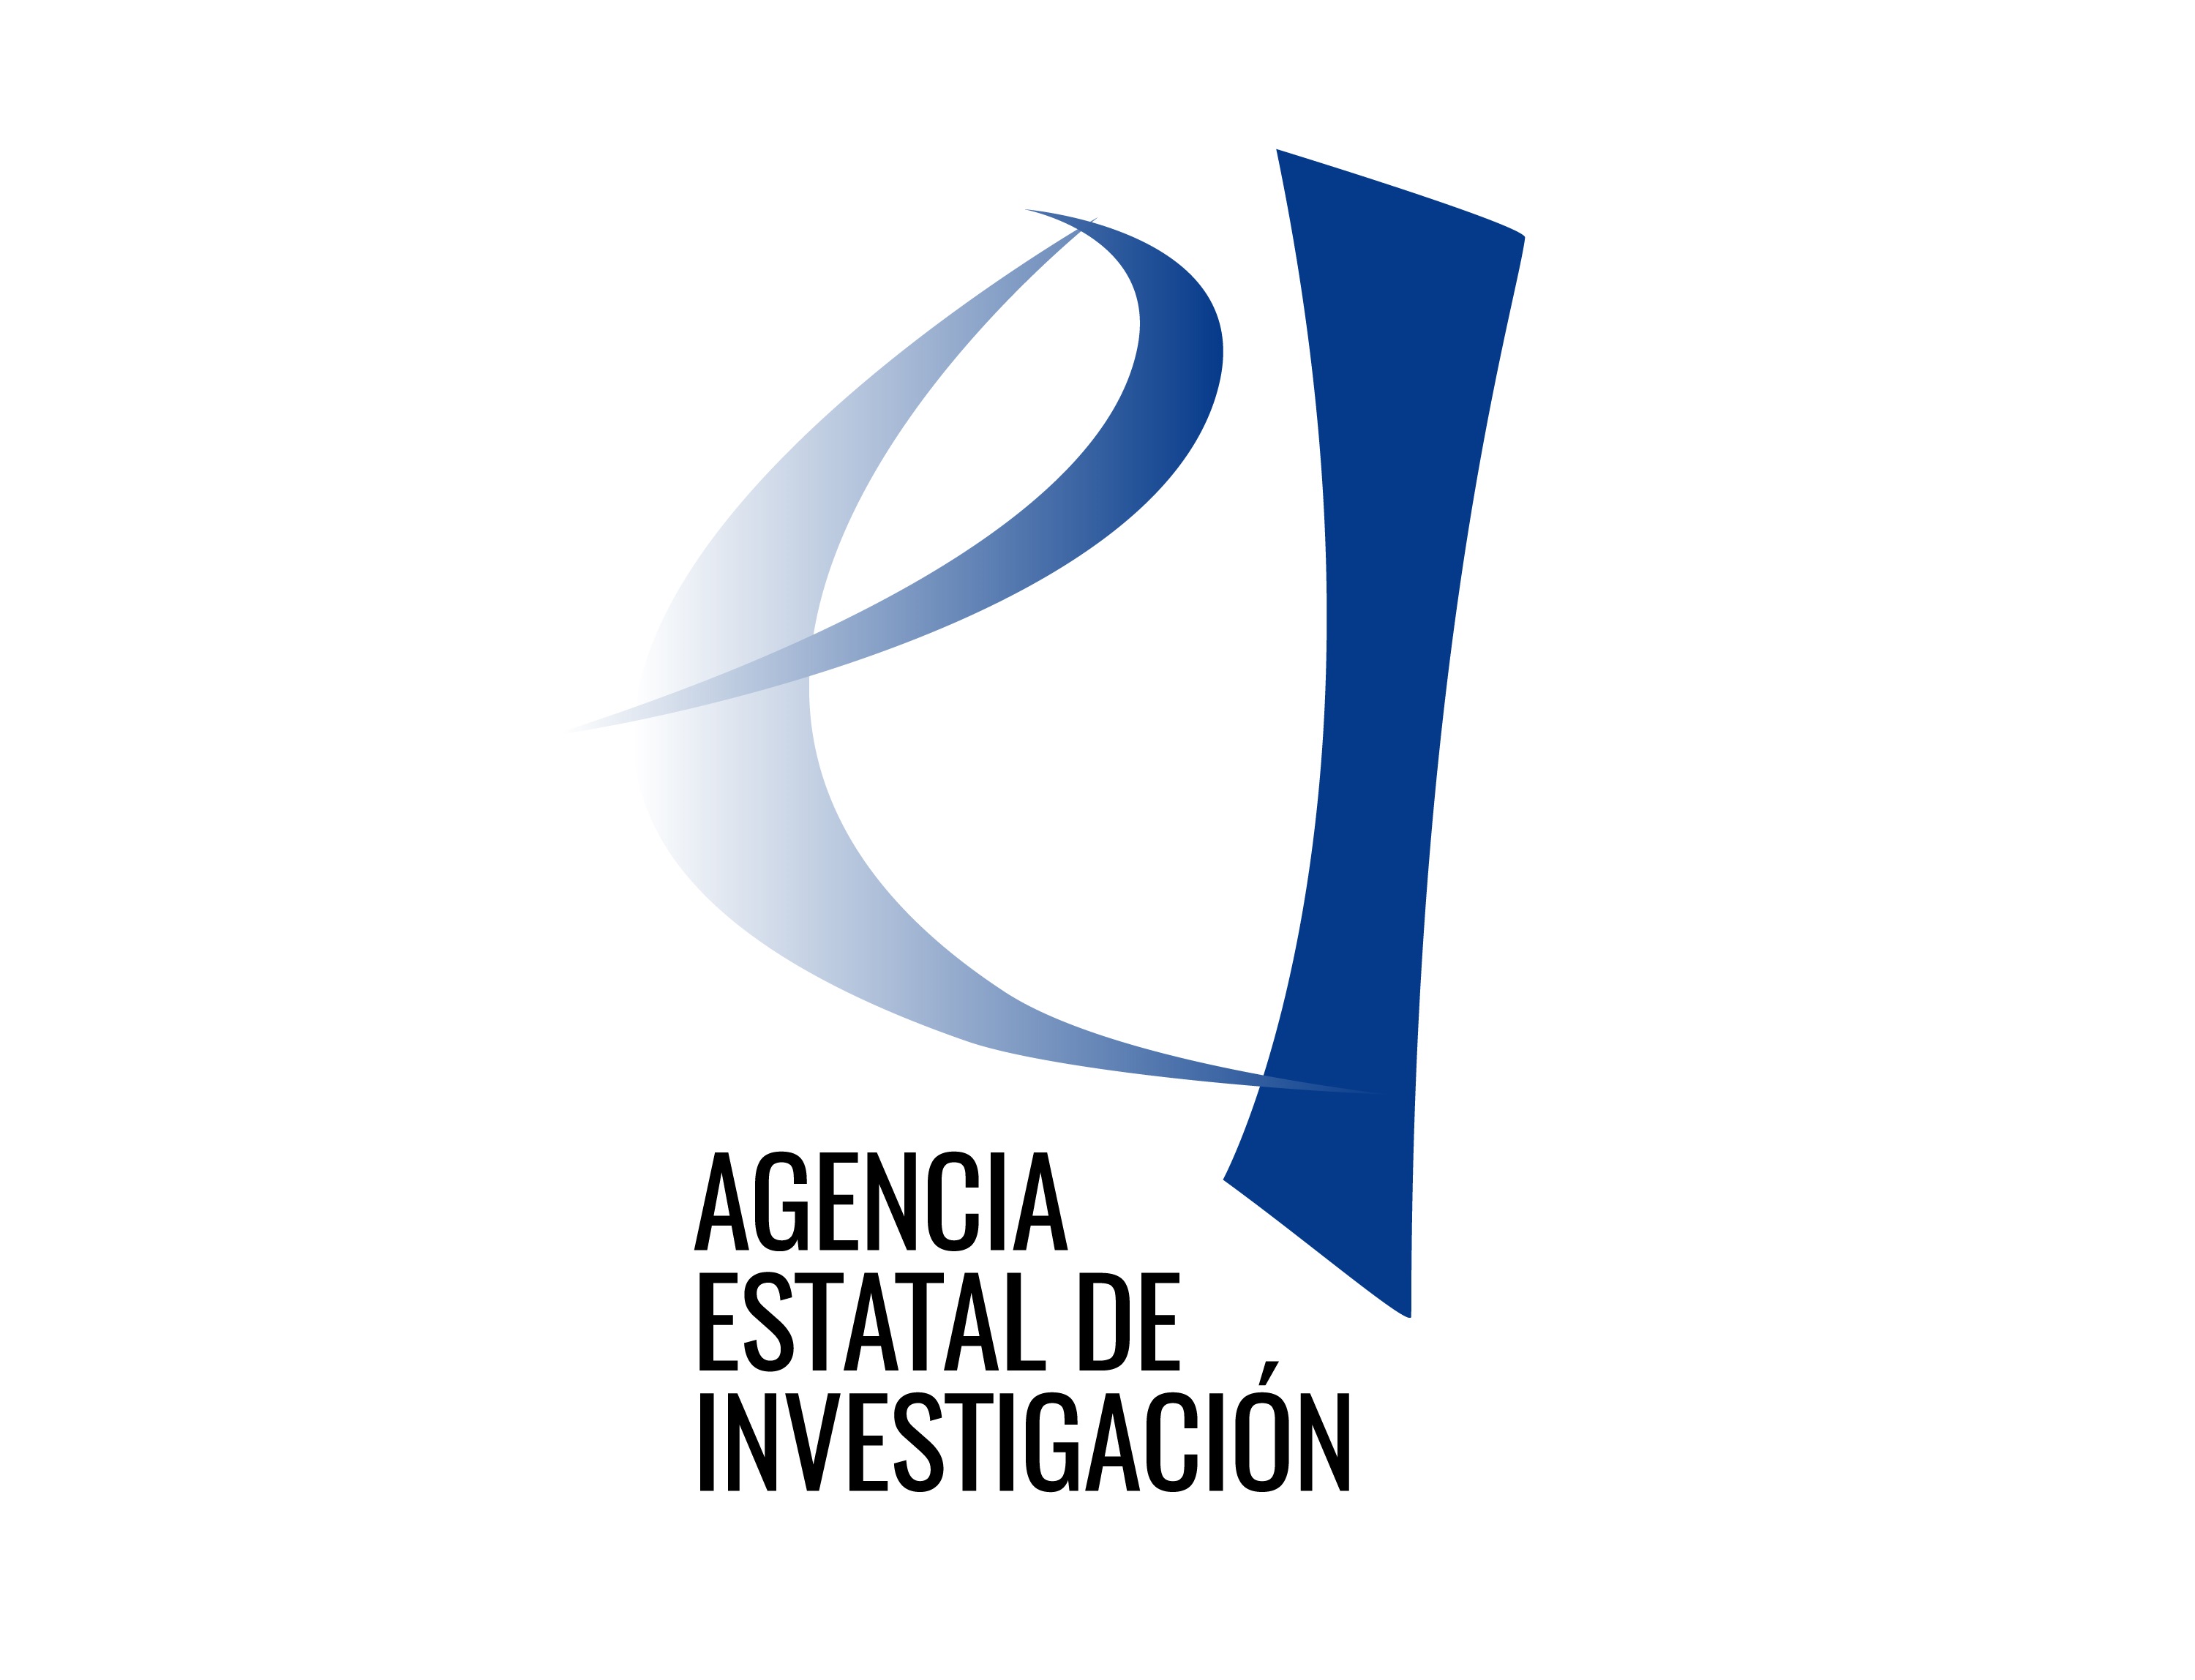 AgenciaEstatalInvestigacion